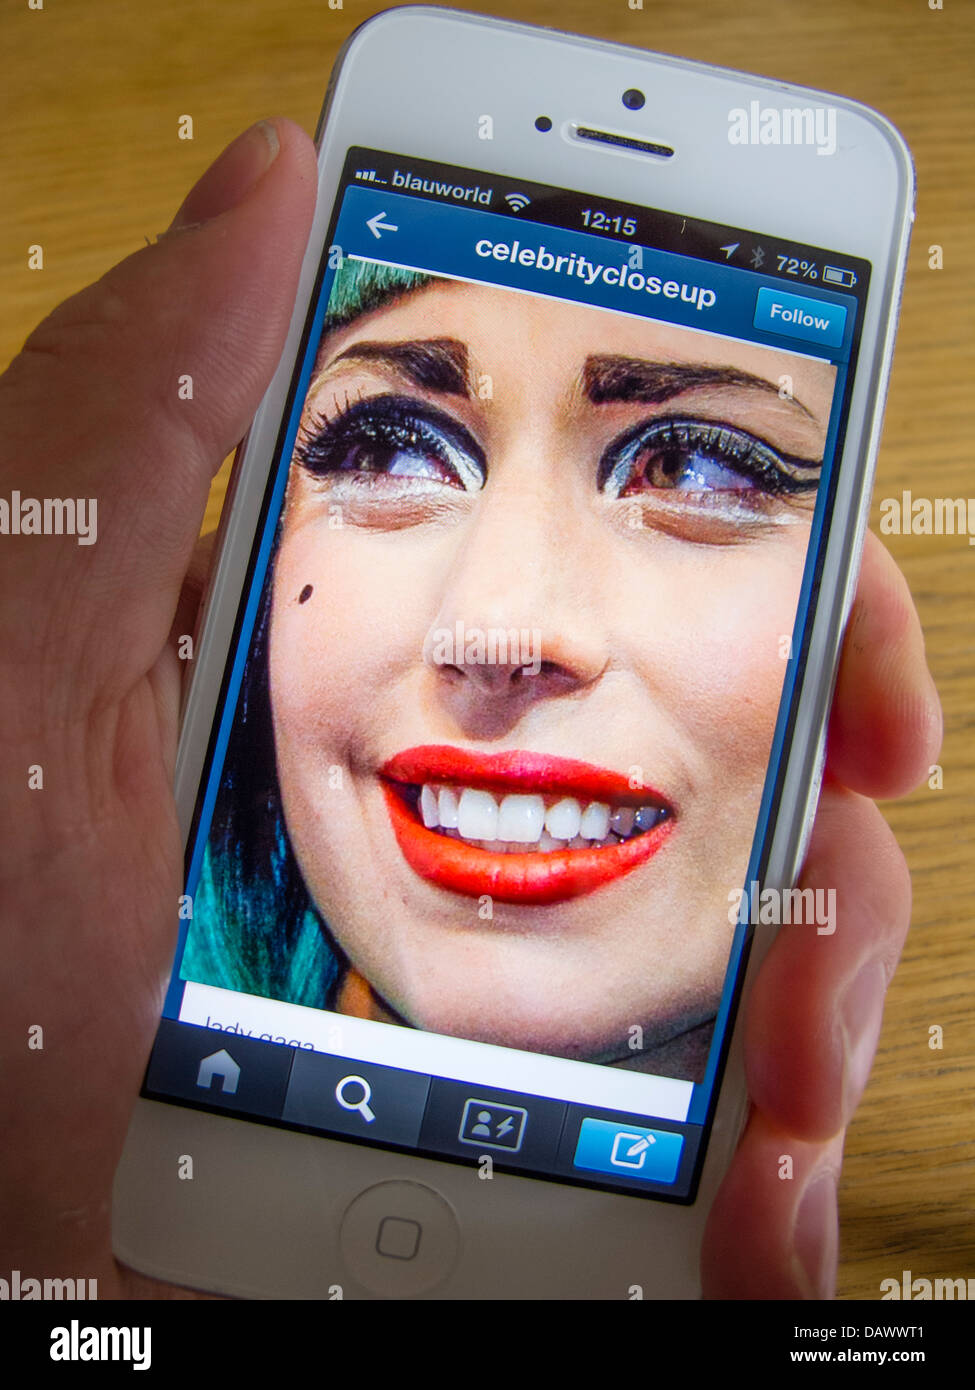 Lady Gaga Foto auf Tumblr soziale Medien und Photosharing app auf weißes iPhone 5 smartphone Stockfoto